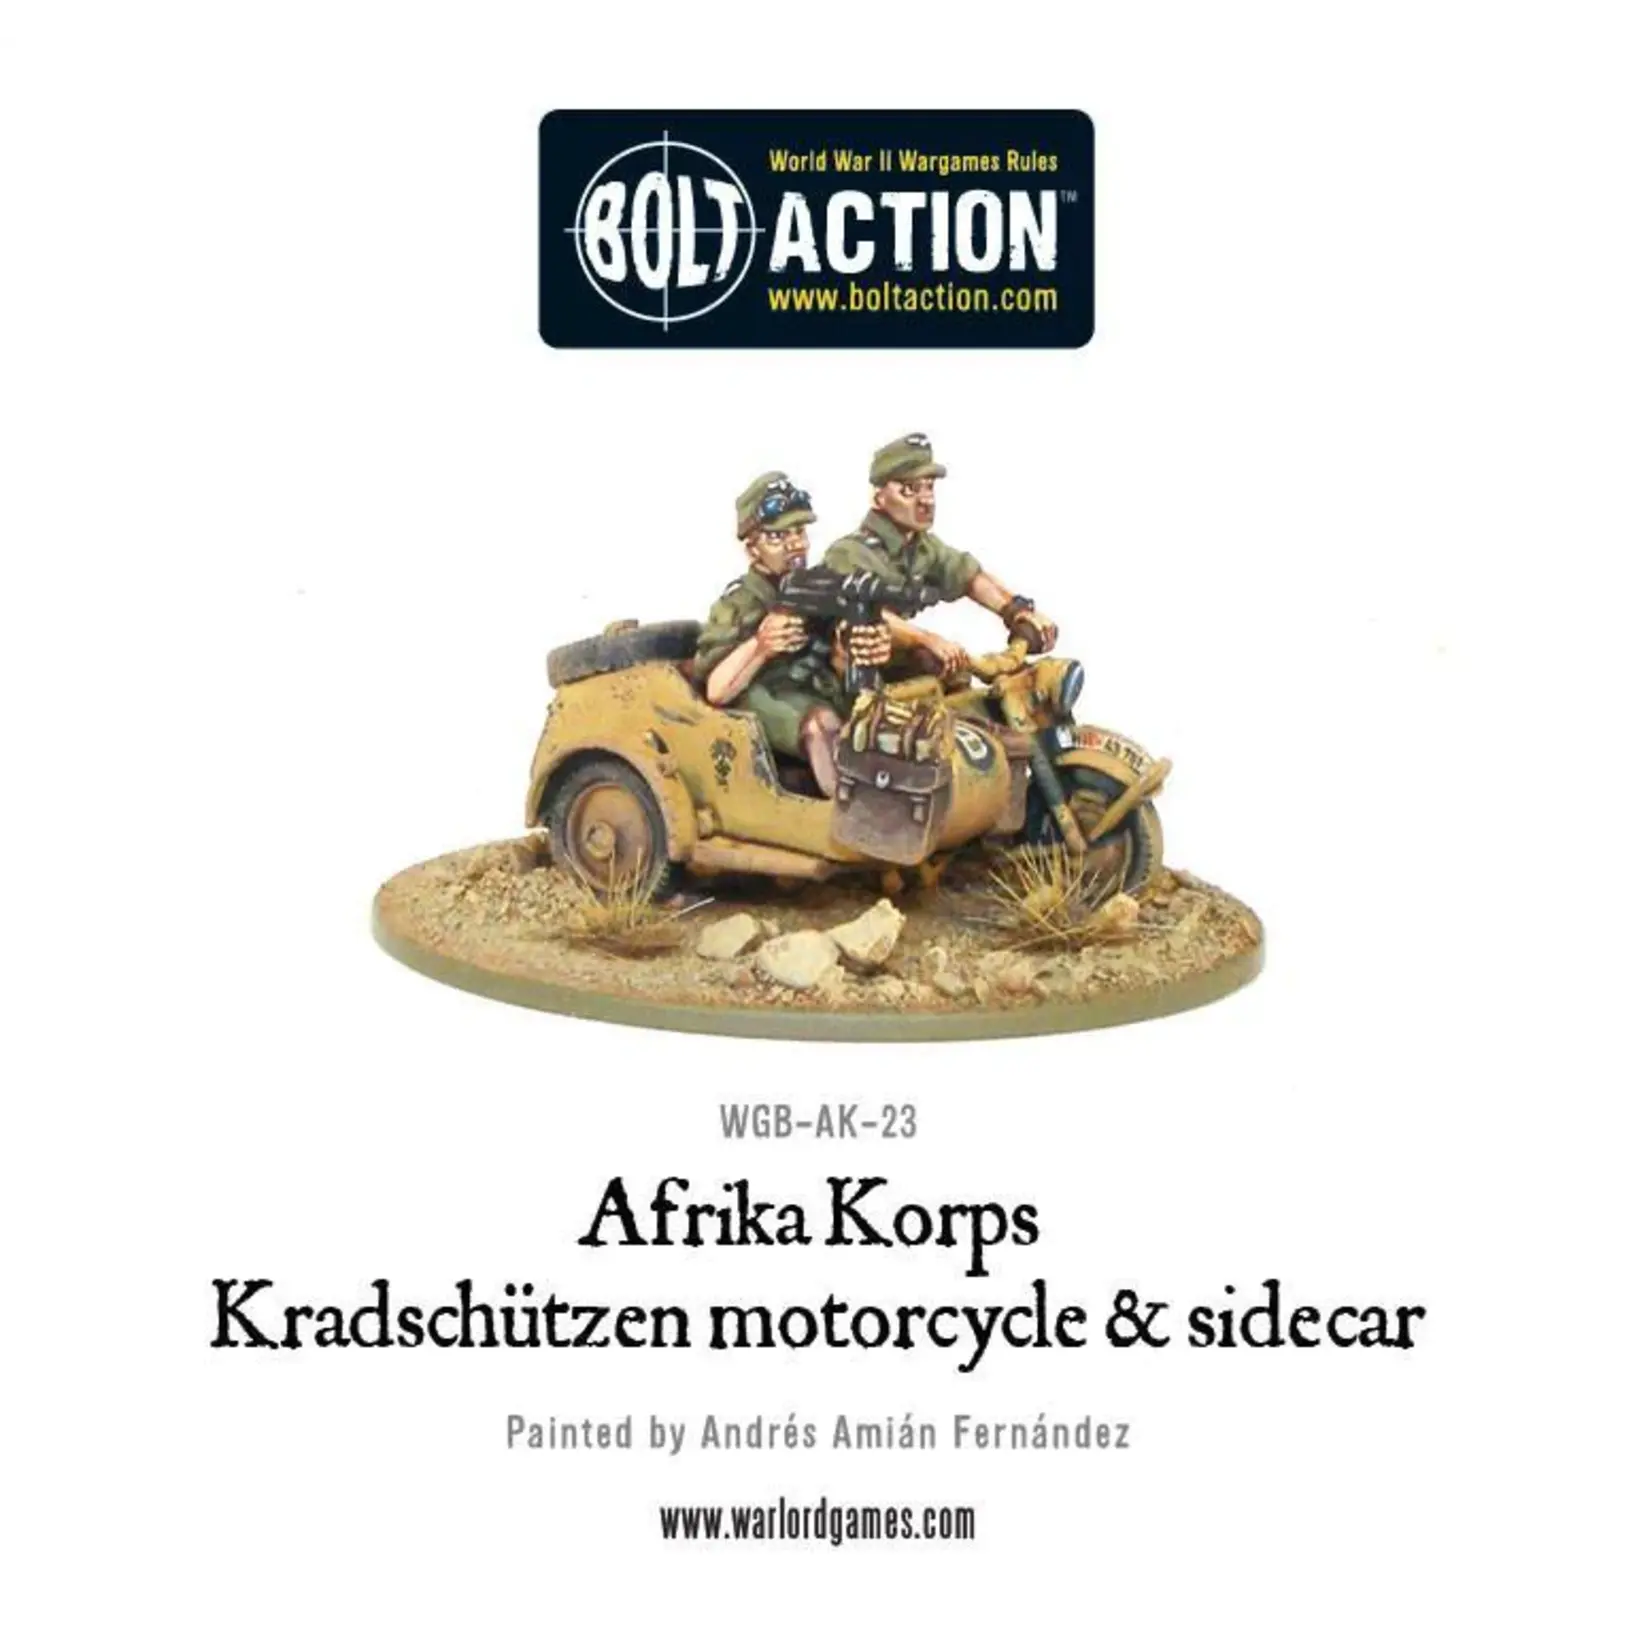 Krad schutzen motorcycle & Sidecar: Afrika Korps - Bolt action